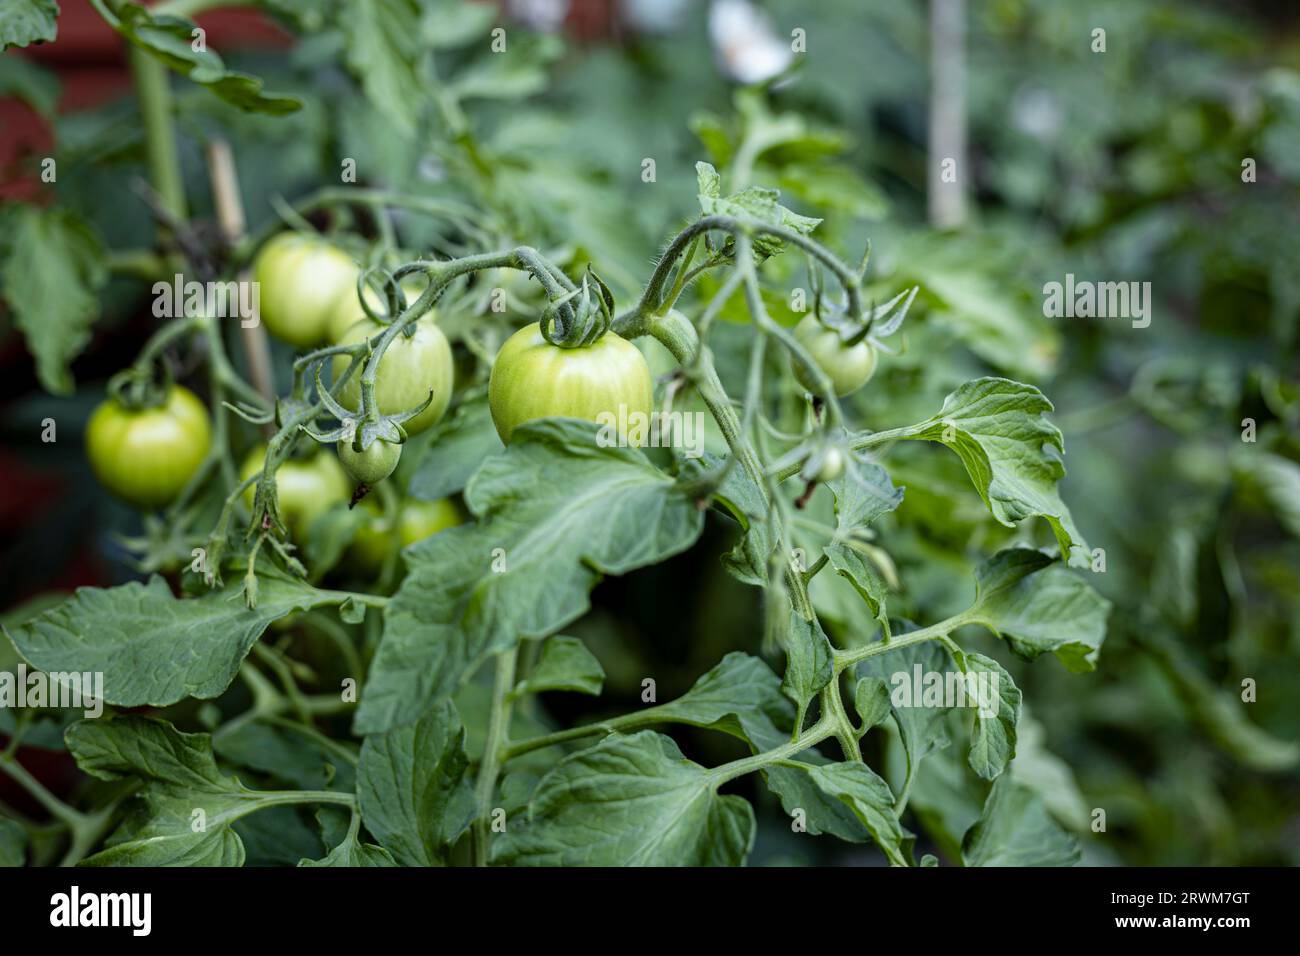 Der obere Teil einer Tomatenpflanze in einer Umgebung im Freien, die in sanftes Licht getaucht wird. Grüne Tomaten wachsen auf der Pflanze und zeigen die Vielfalt Stockfoto